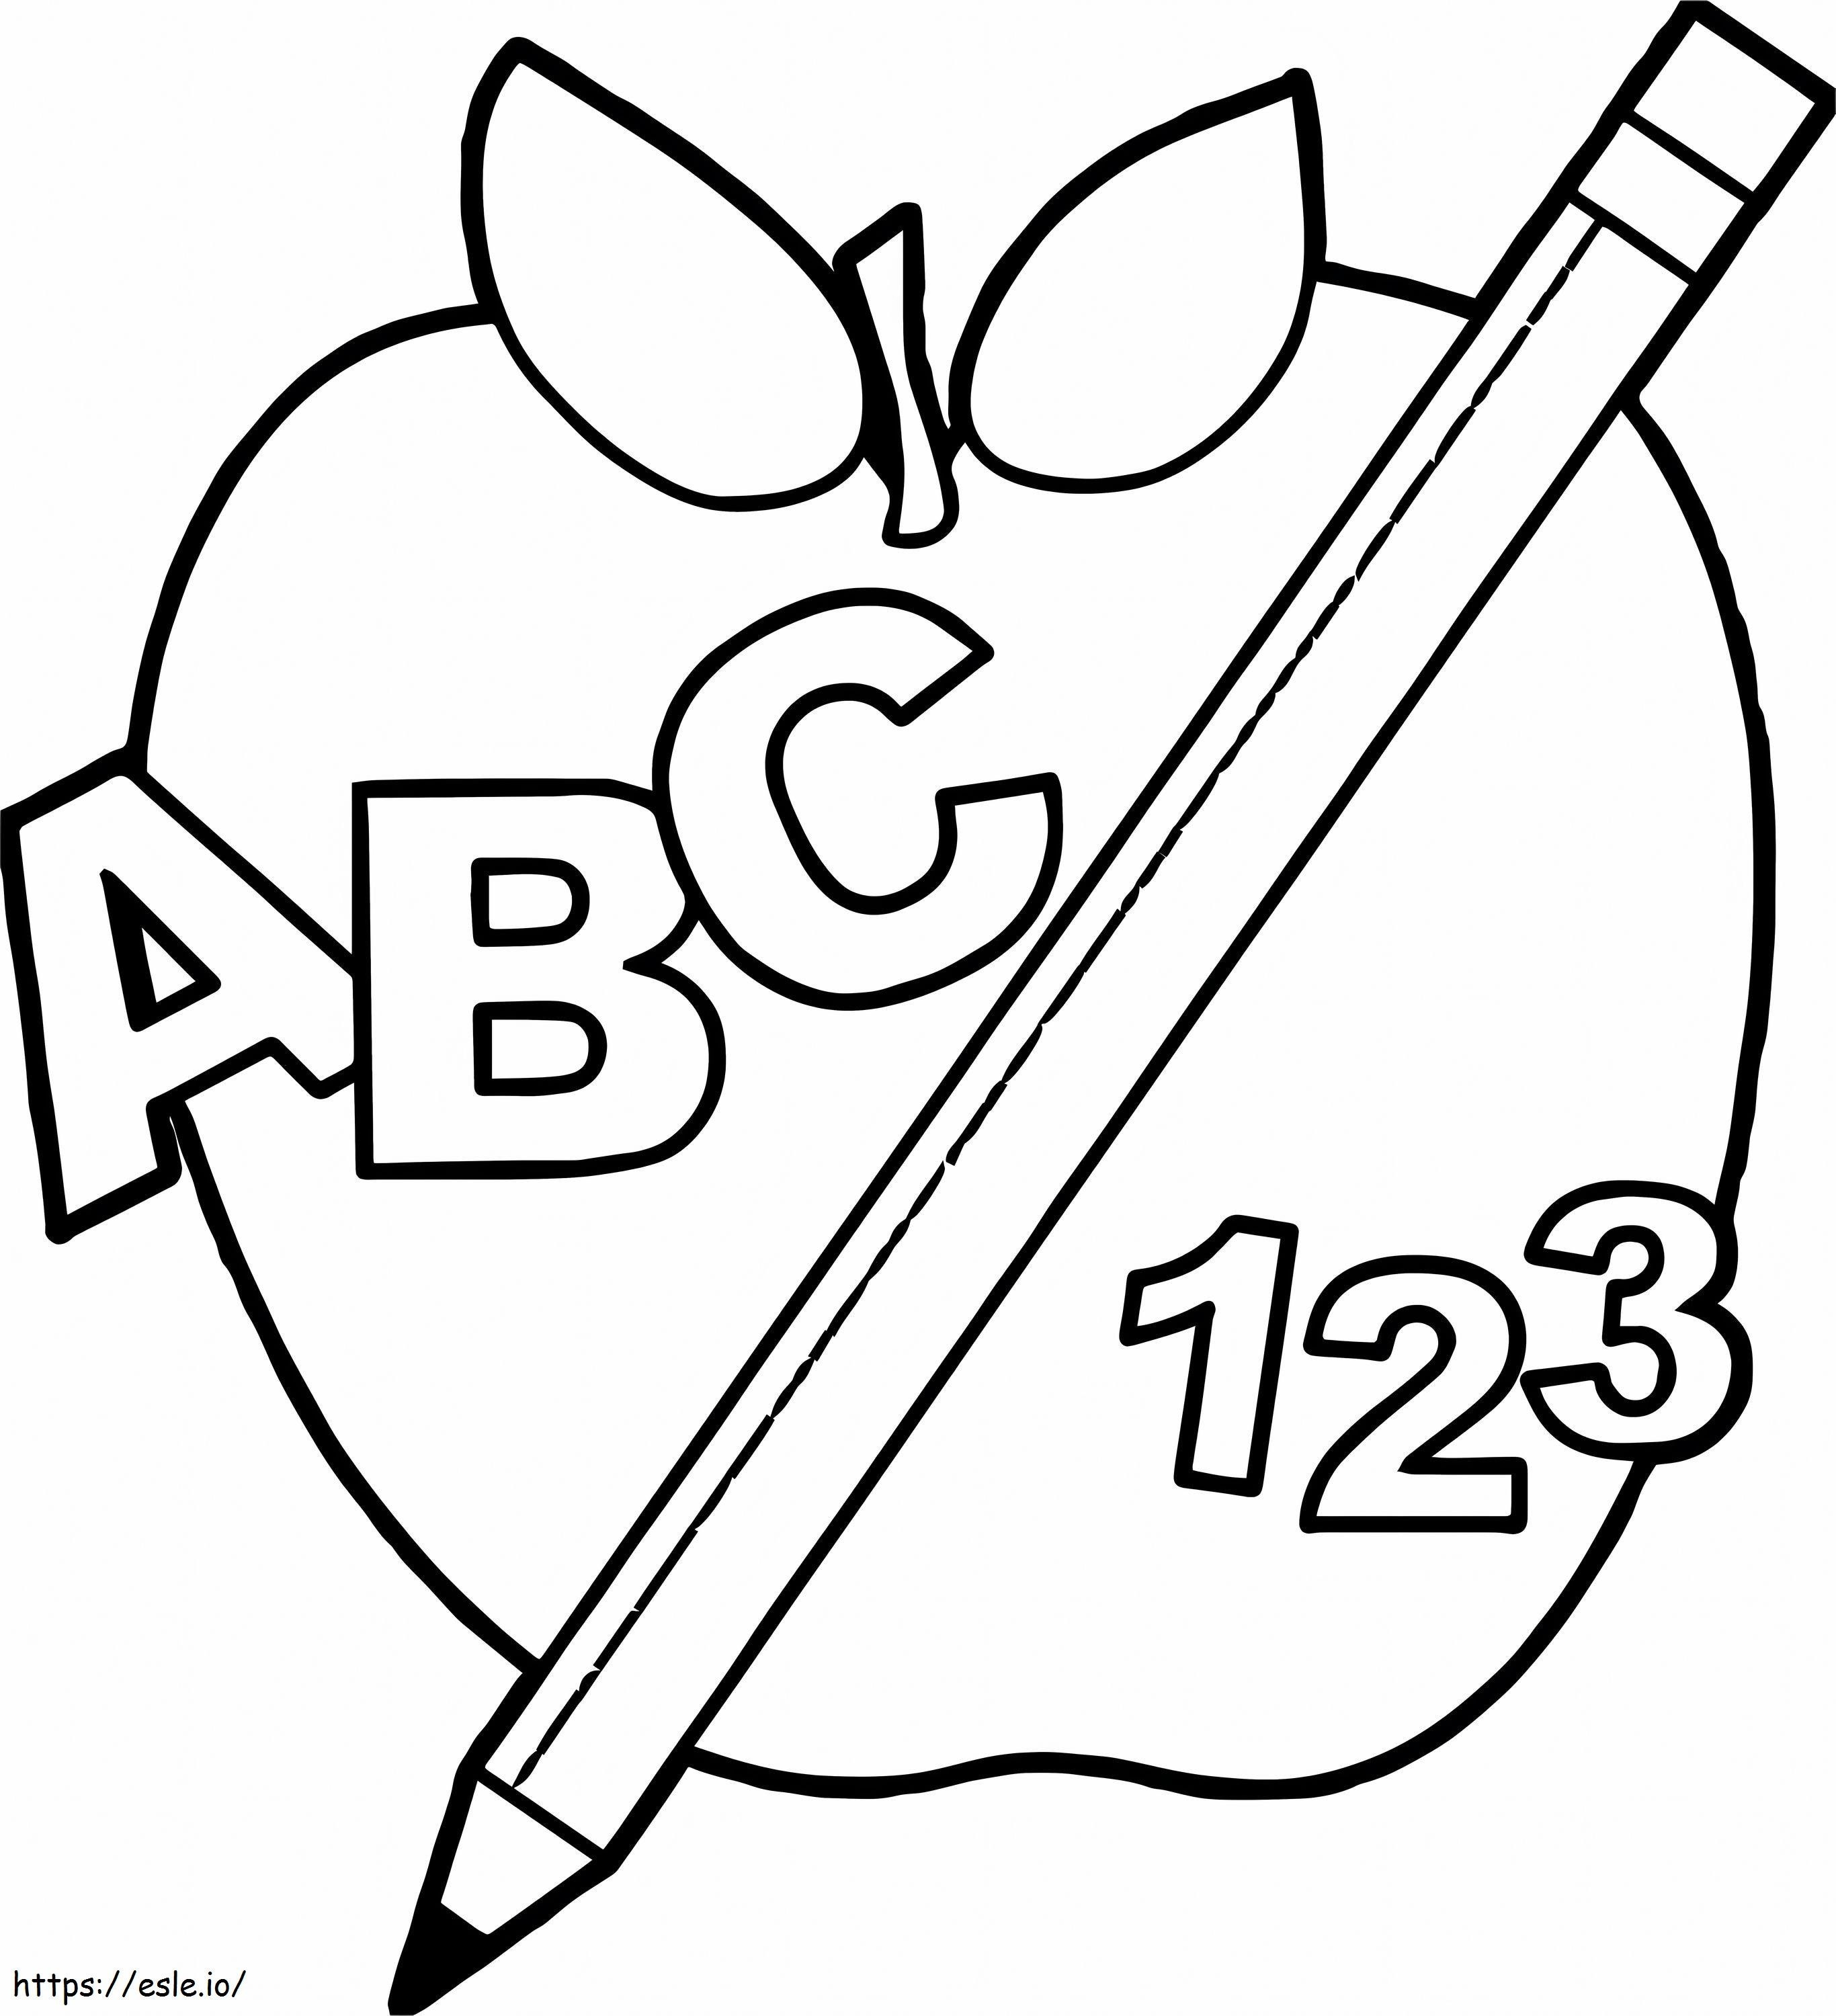 Numer Alfabetu Apple I Ołówek kolorowanka